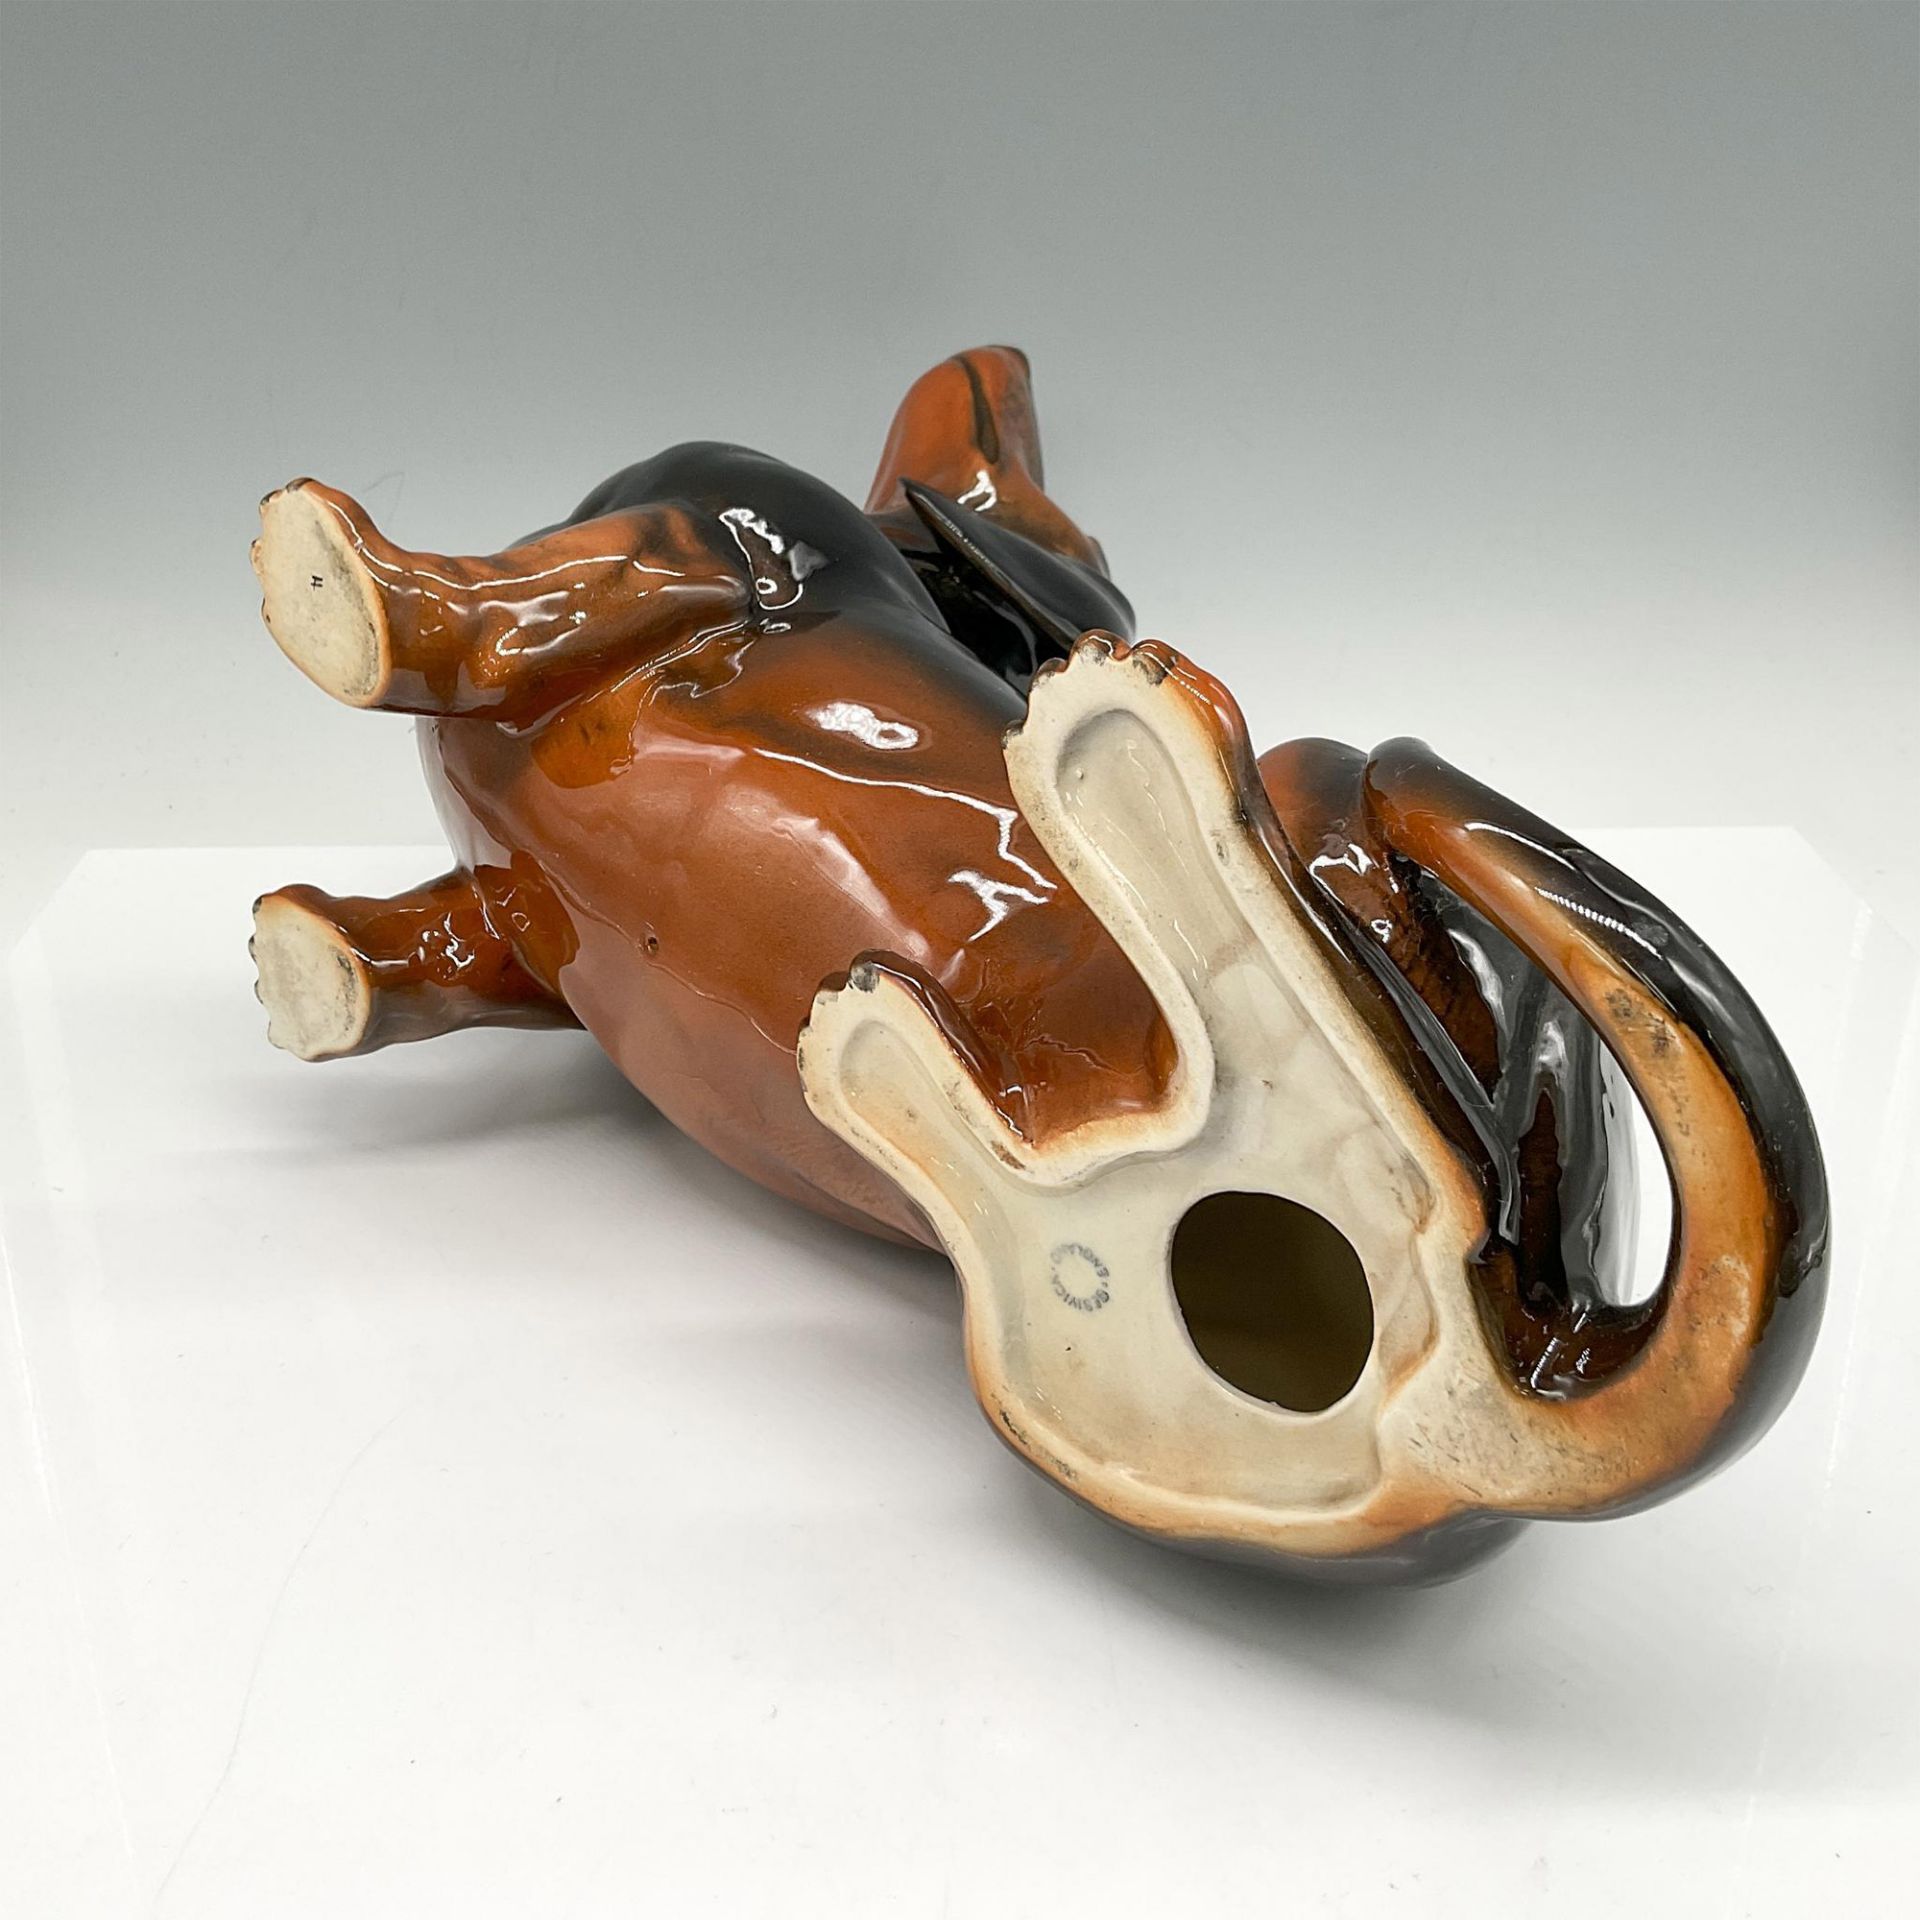 Beswick Porcelain Dog Figurine, Large Dachshund - Image 4 of 4